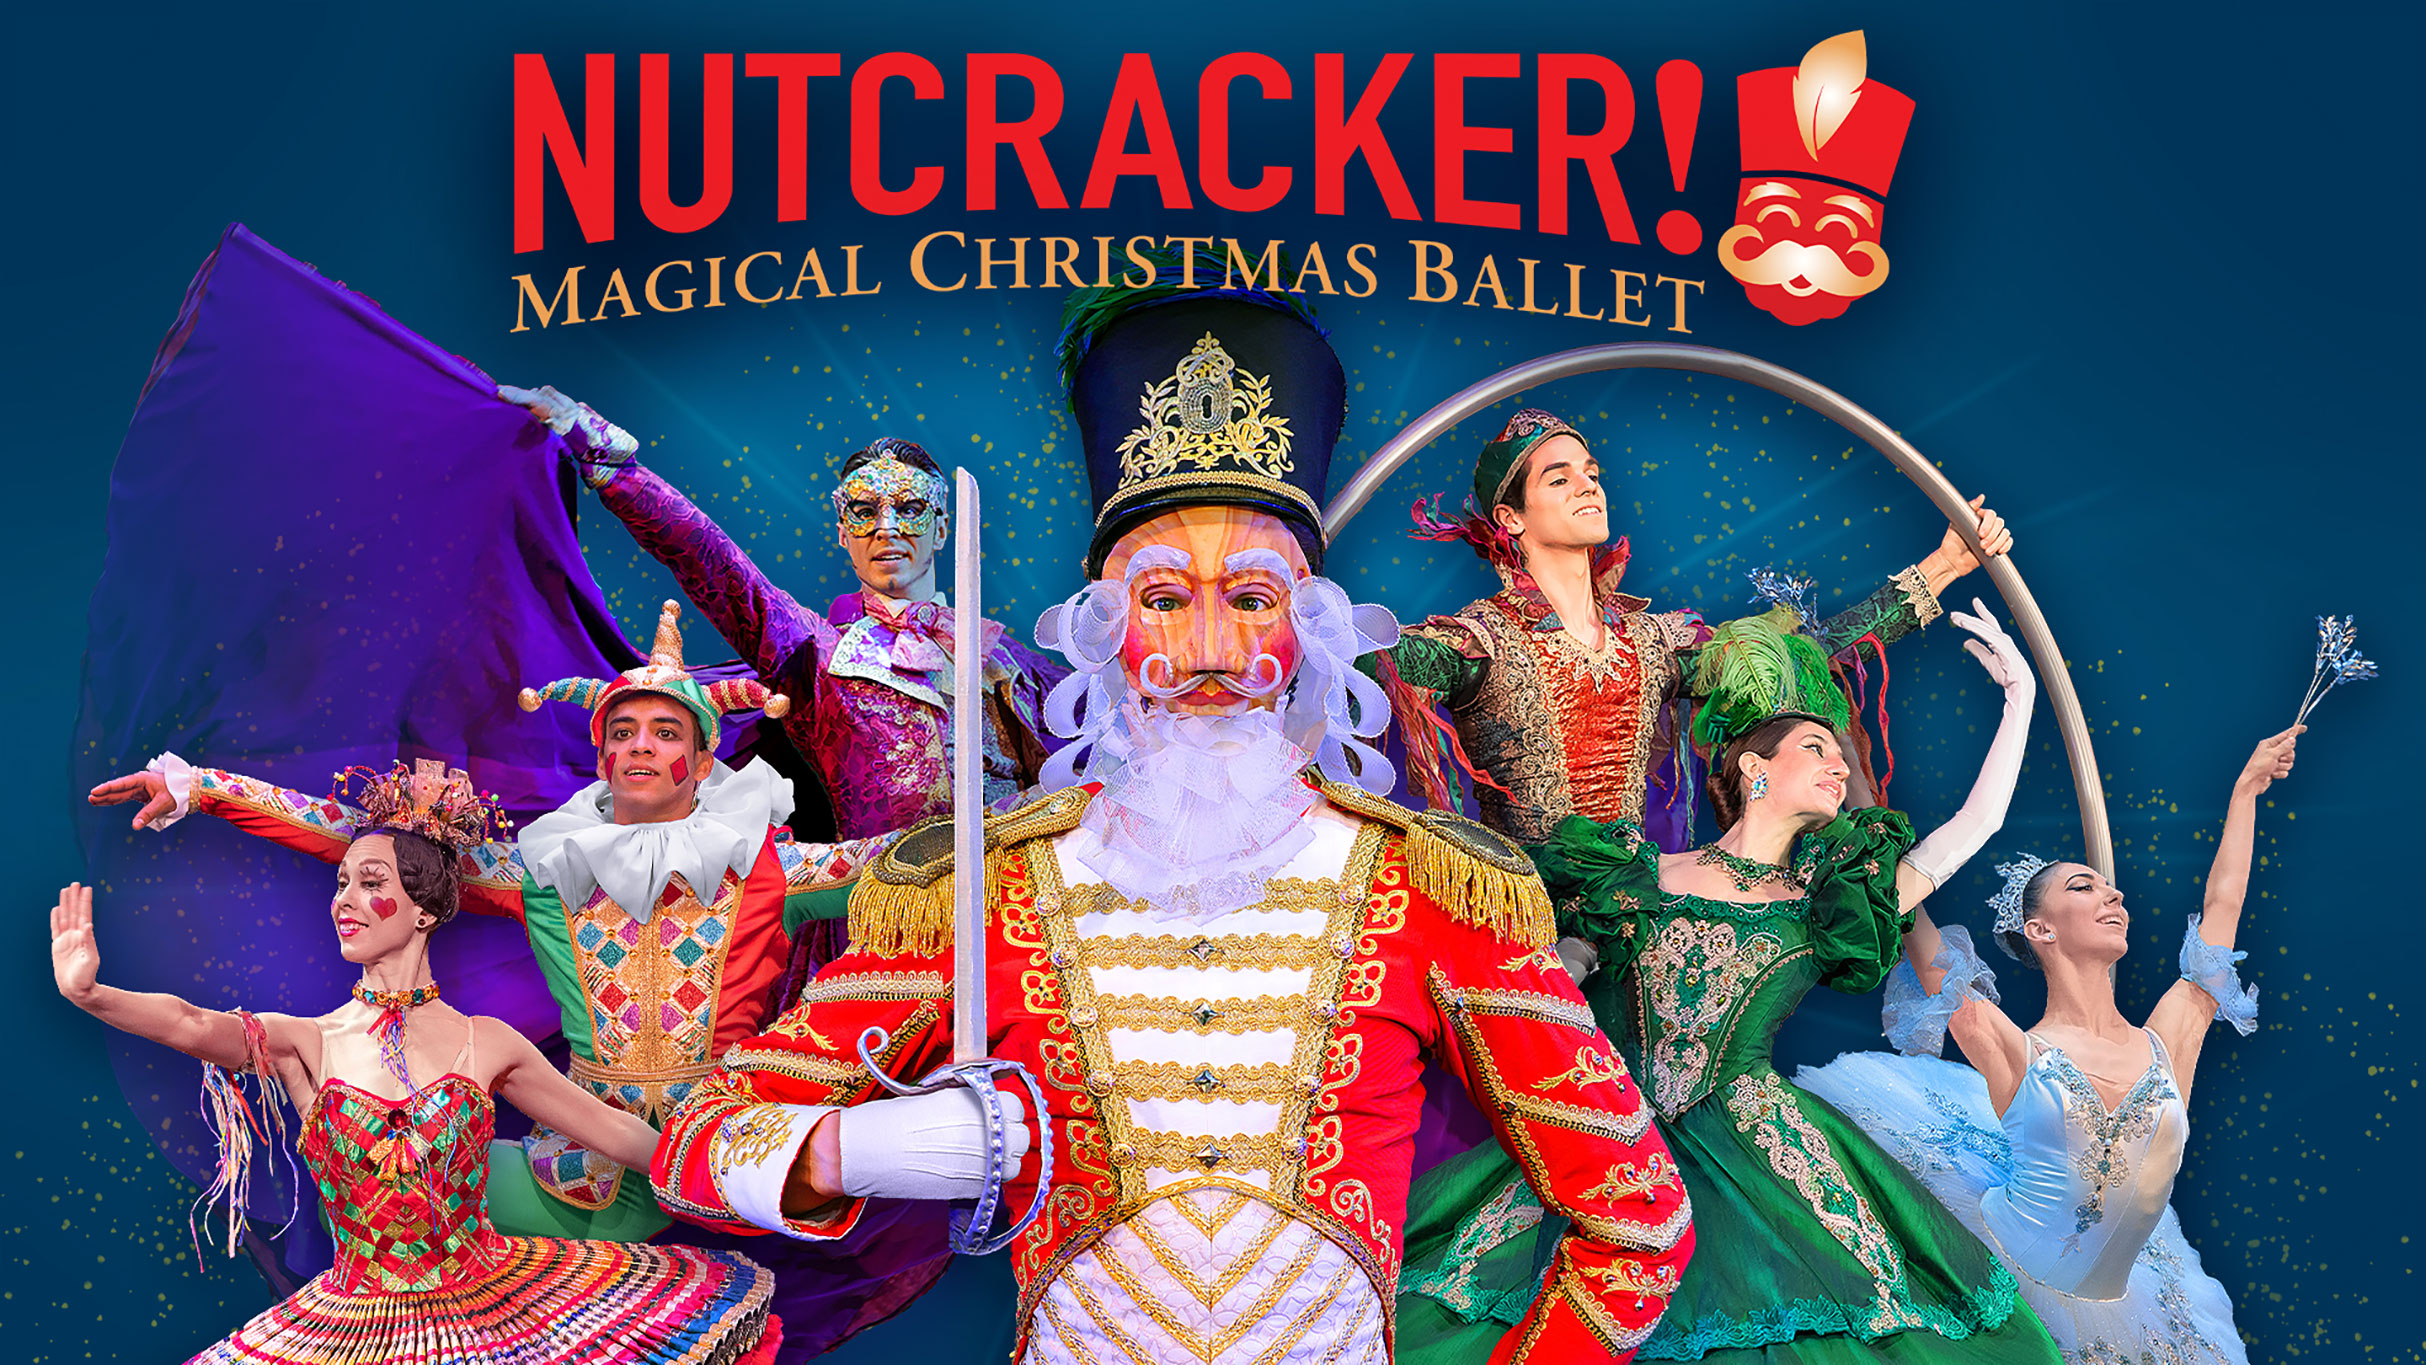 Nutcracker!  Magical Christmas Ballet!